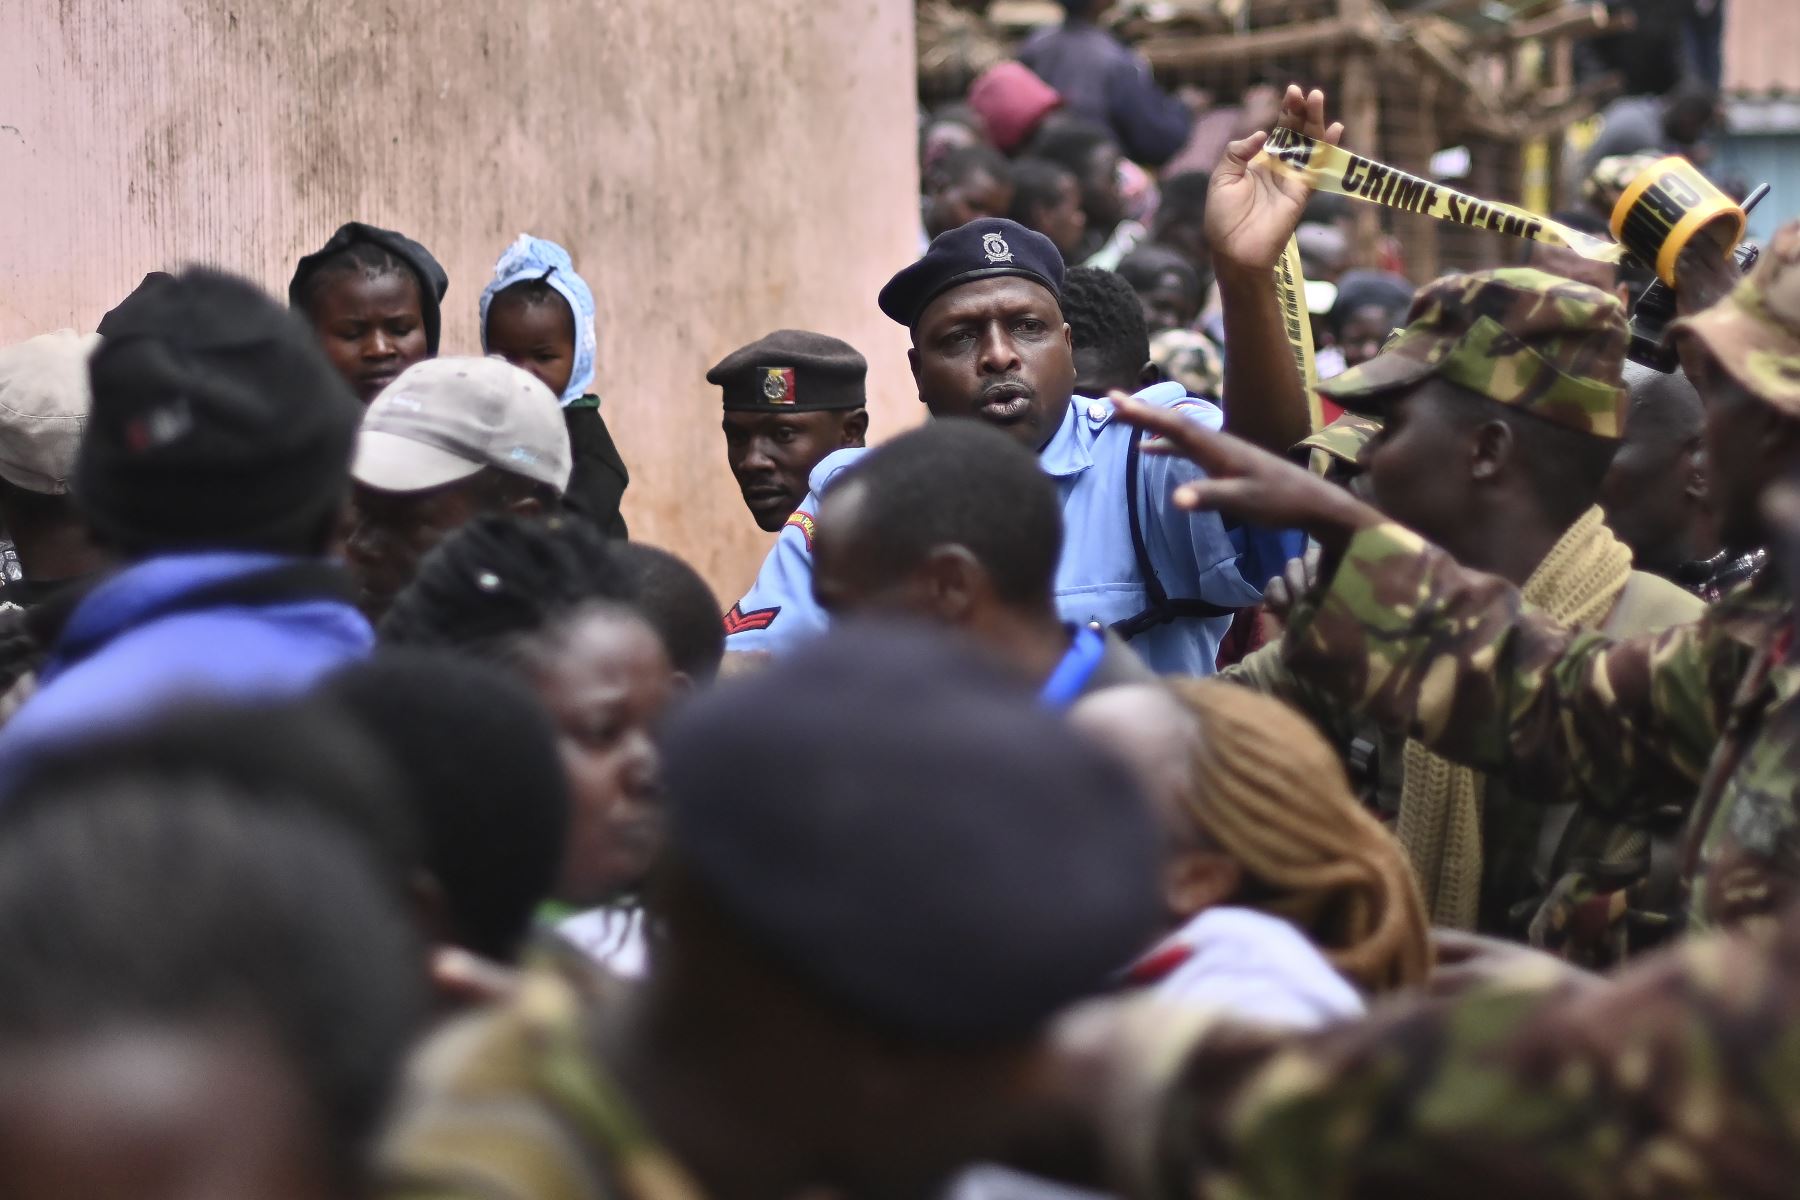 Los oficiales de policía empujan a una multitud de espectadores mientras aseguran la escena donde un bloque de aulas se derrumbó en la escuela primaria Precious Talents en el distrito electoral Dagoretti de Nairobi.
Foto: AFP